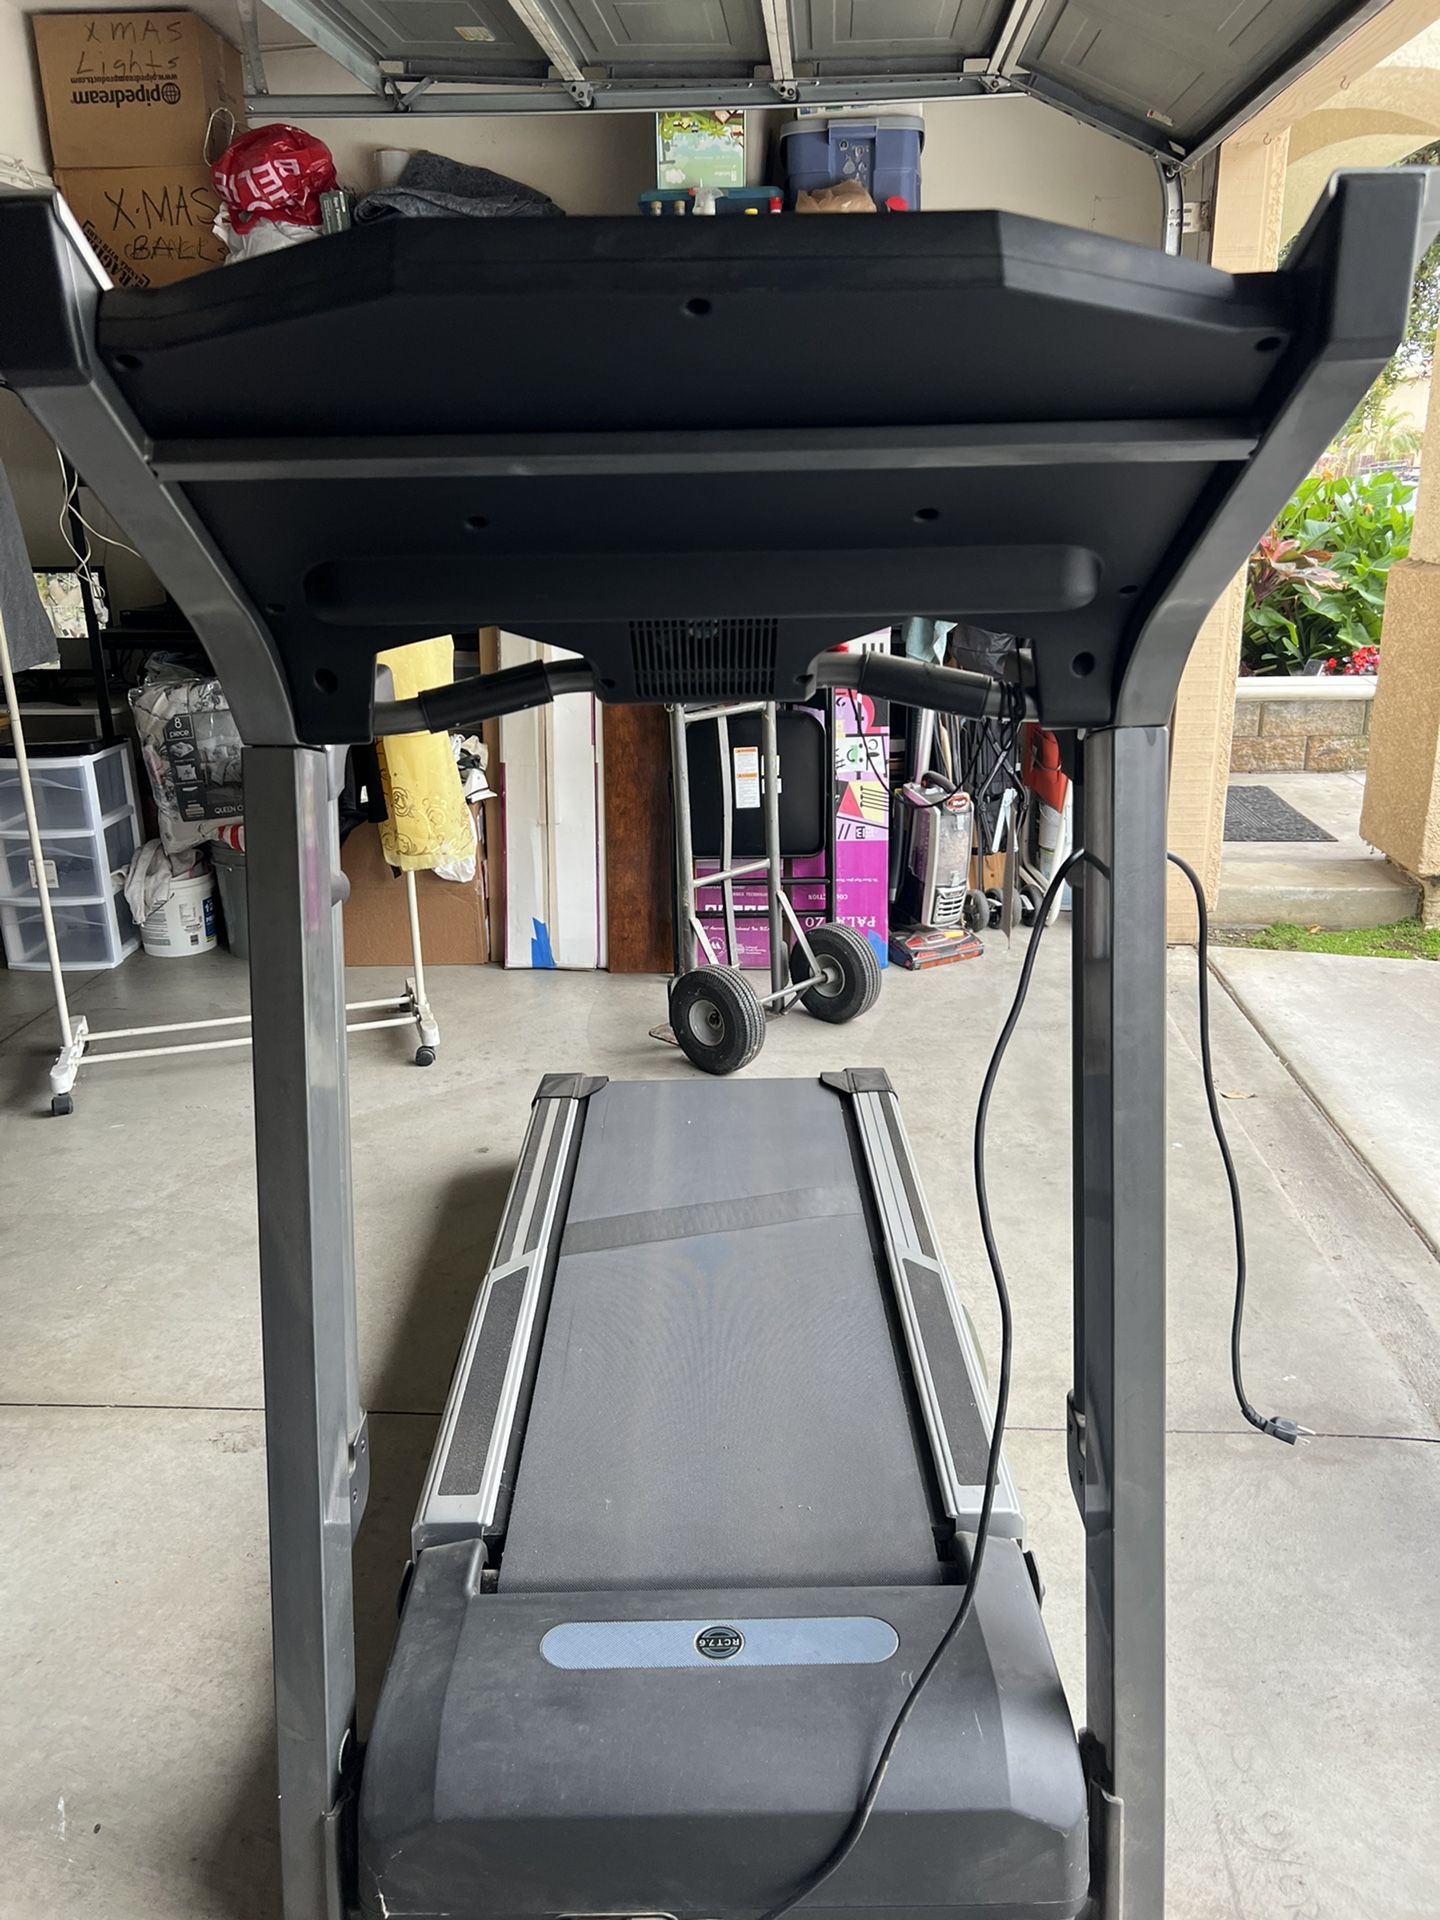 Horizon Treadmill 